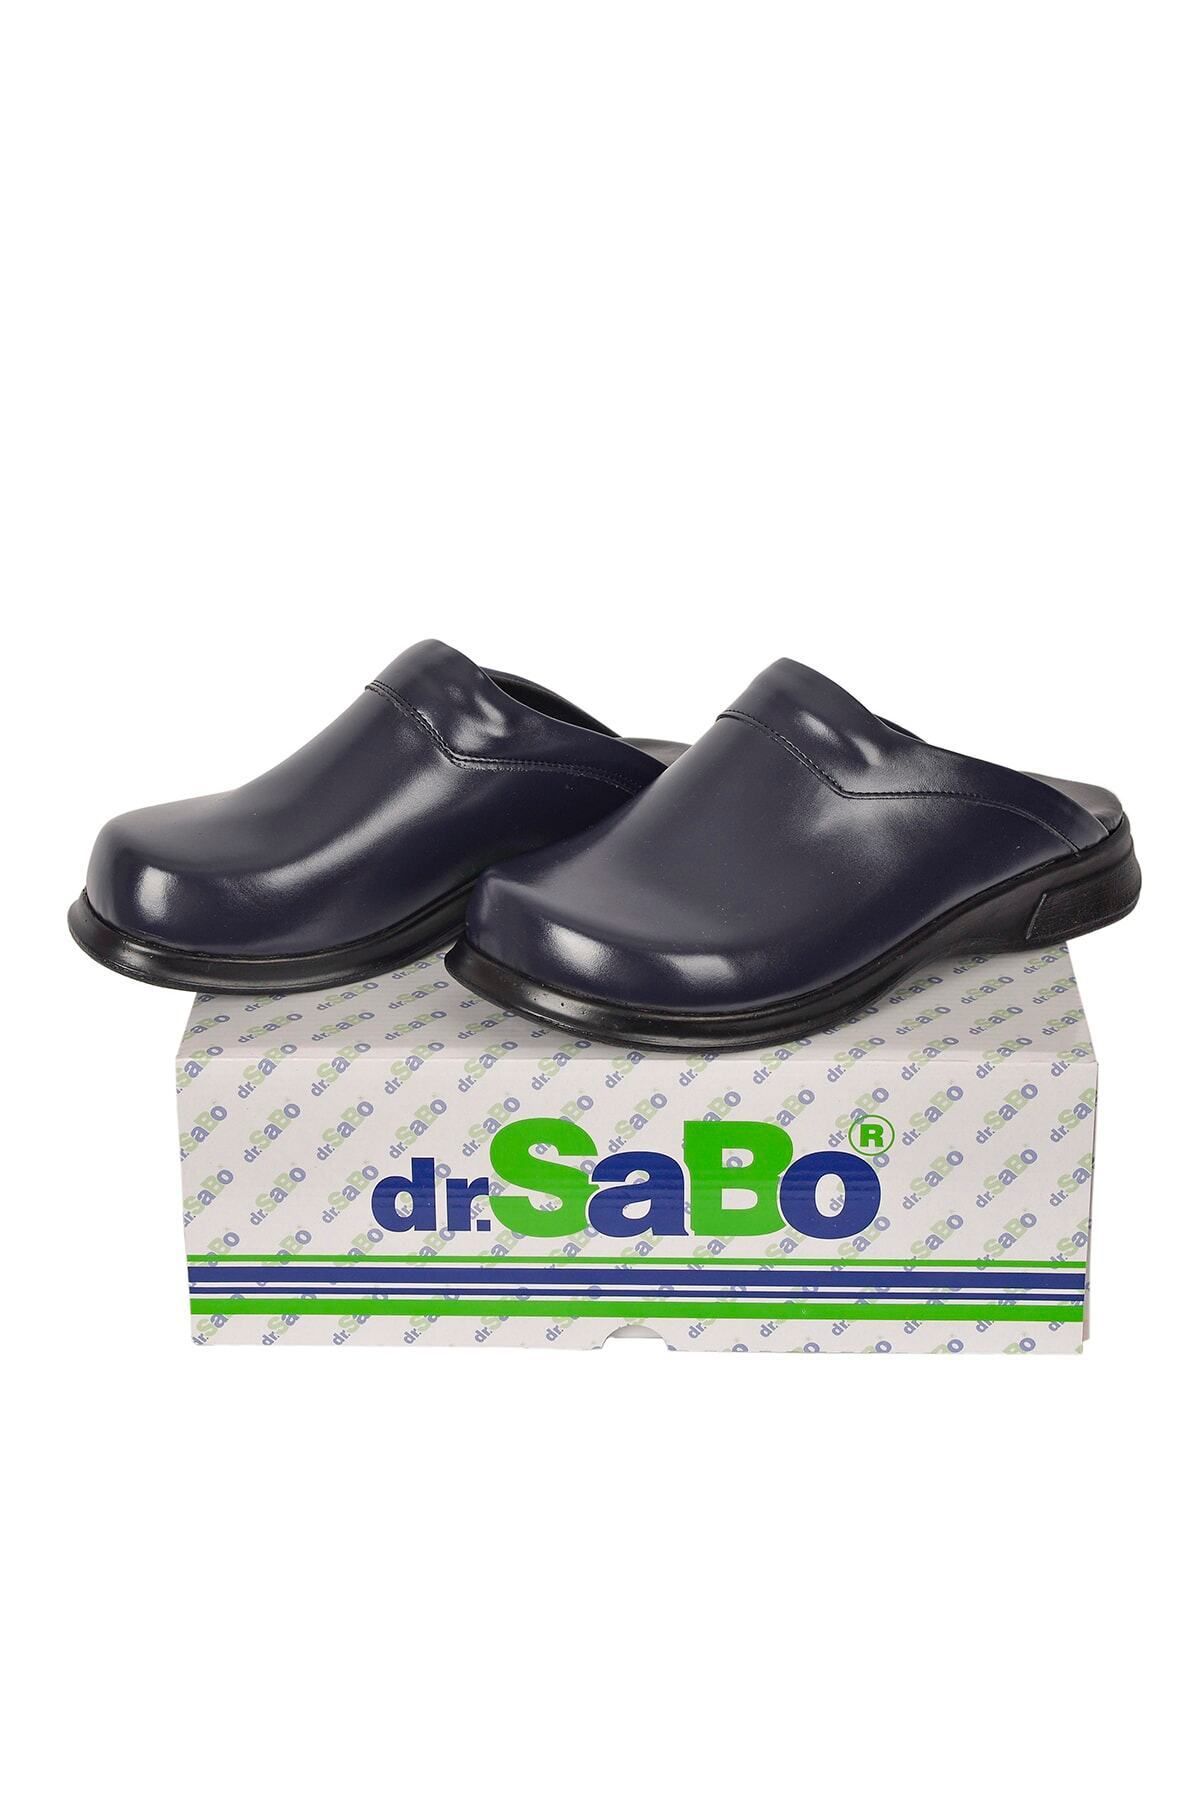 DR SABO Lacivert Aşçı Sabo Terlik - Mutfak Terliği Ortopedik Deri